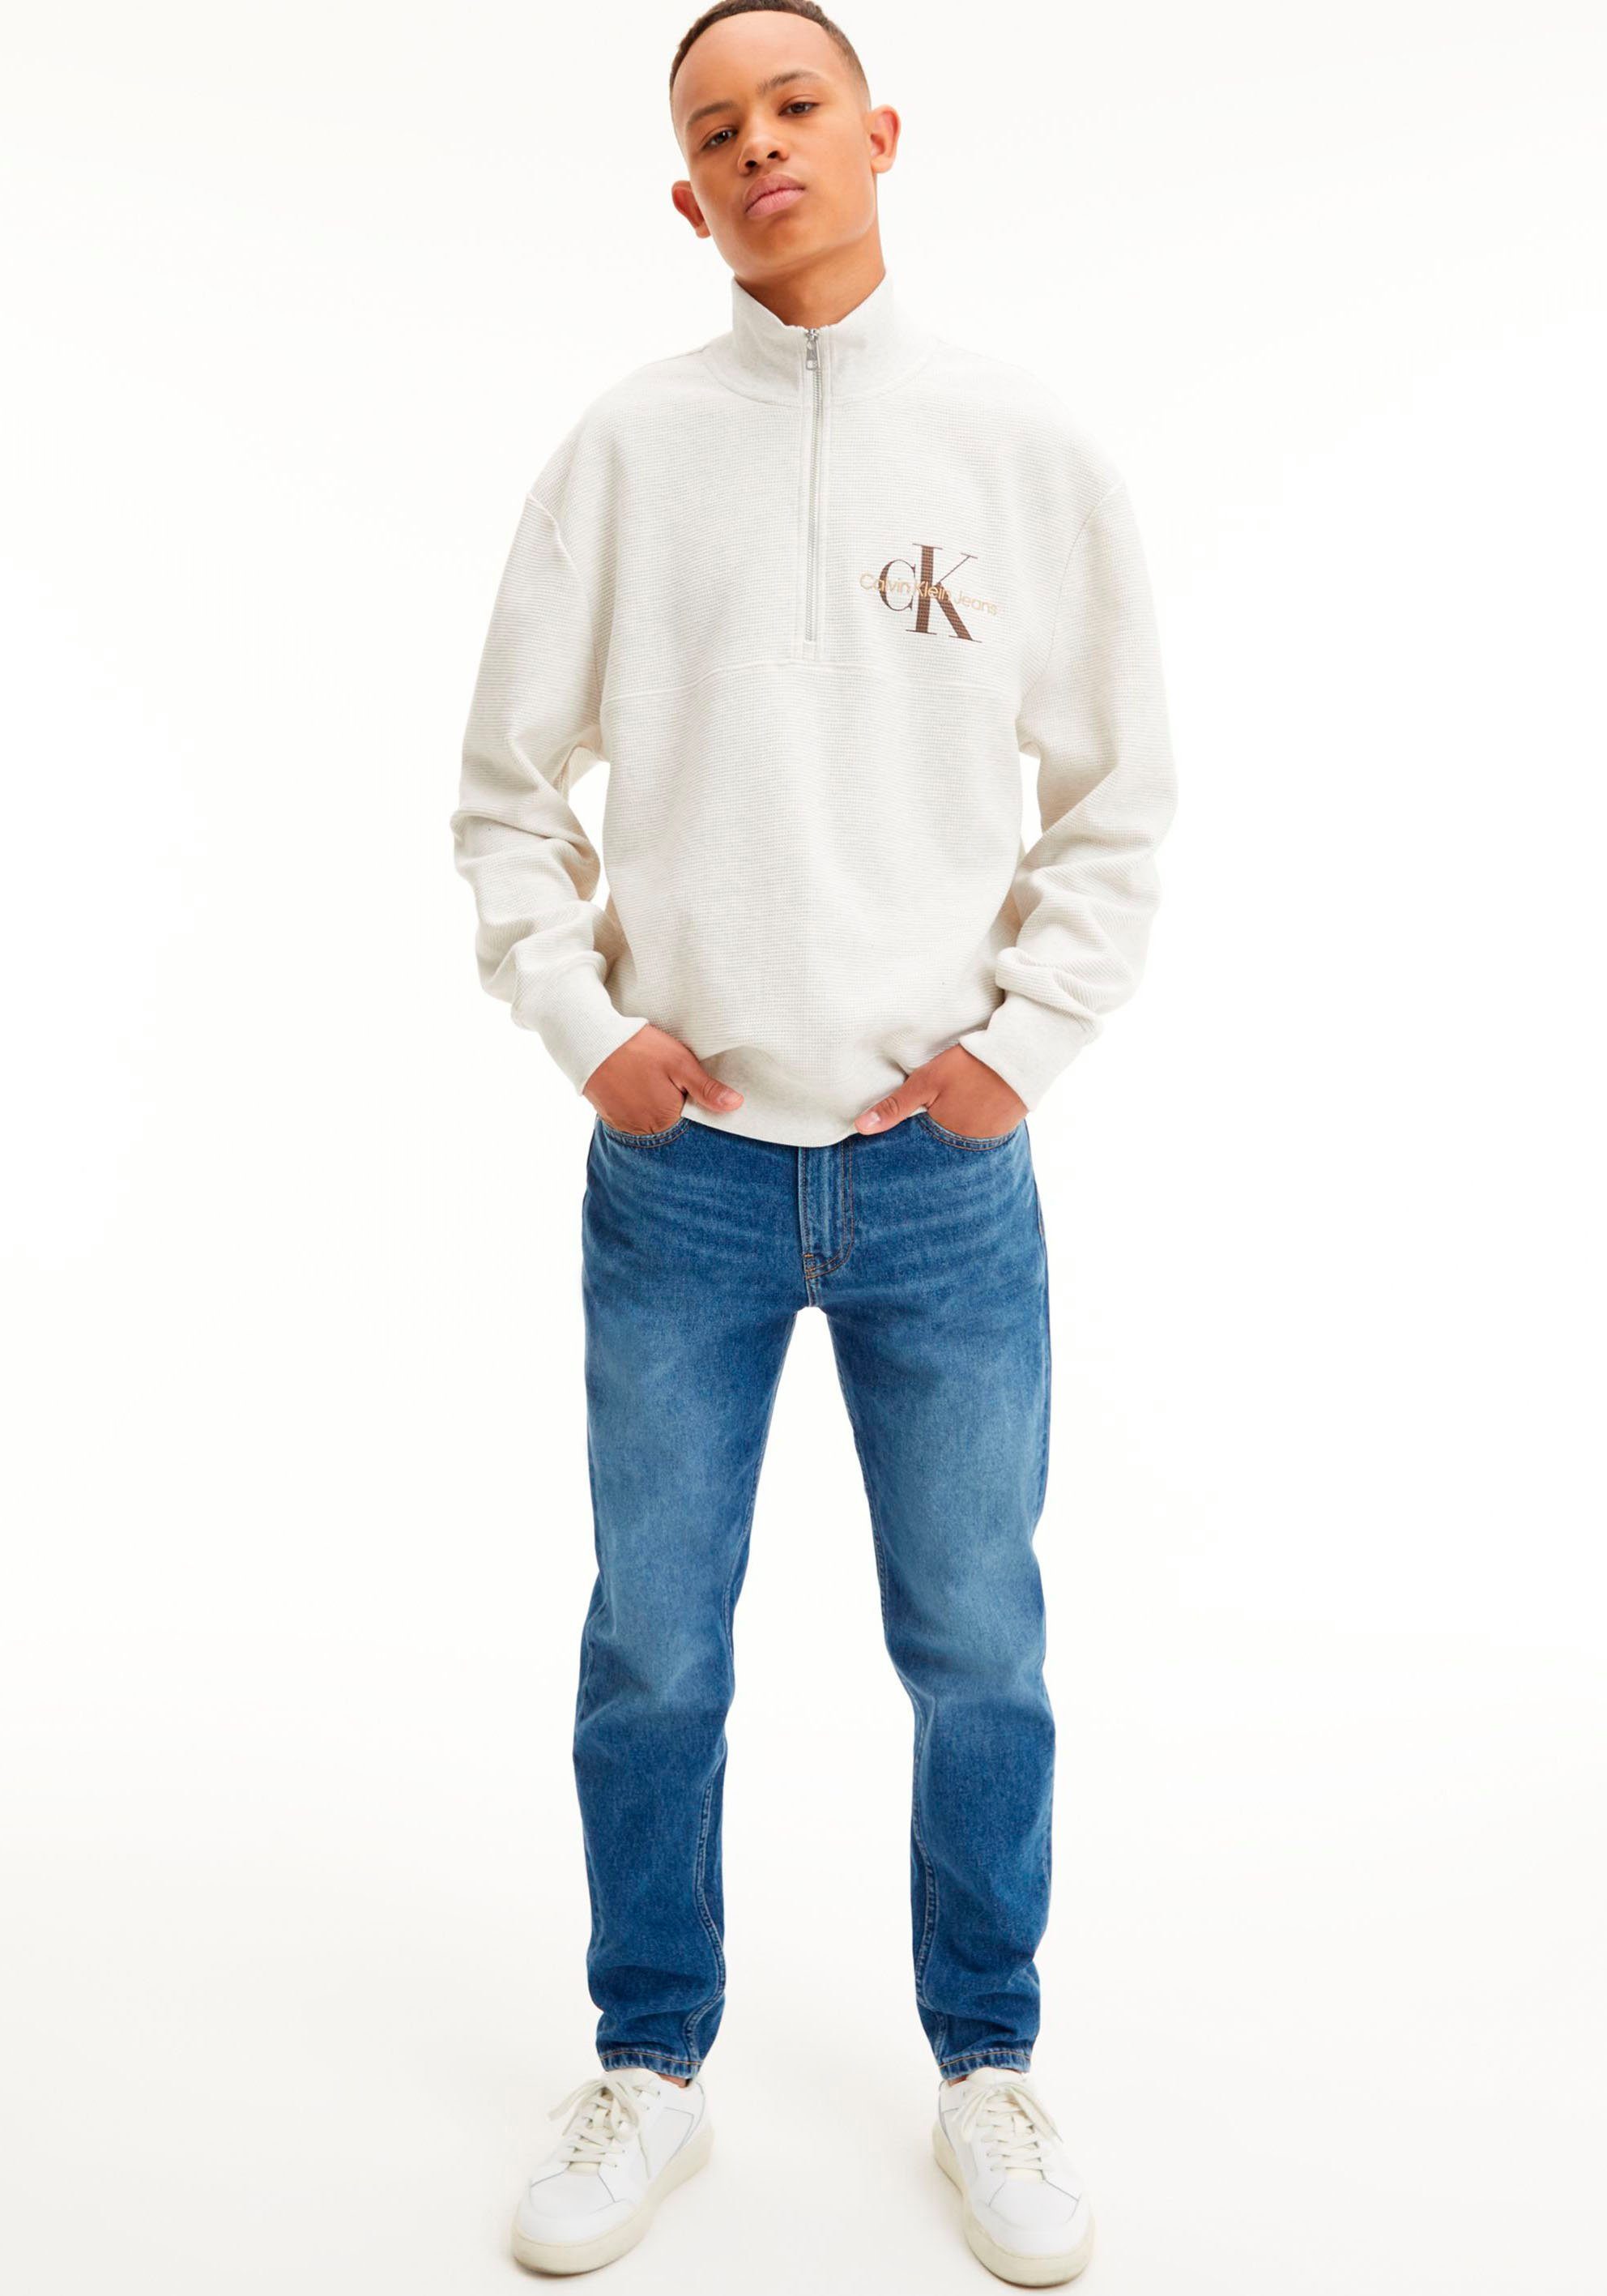 Calvin Klein Jeans Sweatshirt HALF halblangem Reißverschluss ZIP Heather MONOLOGO Grey WAFFLE HWK White Troyerkragen und mit